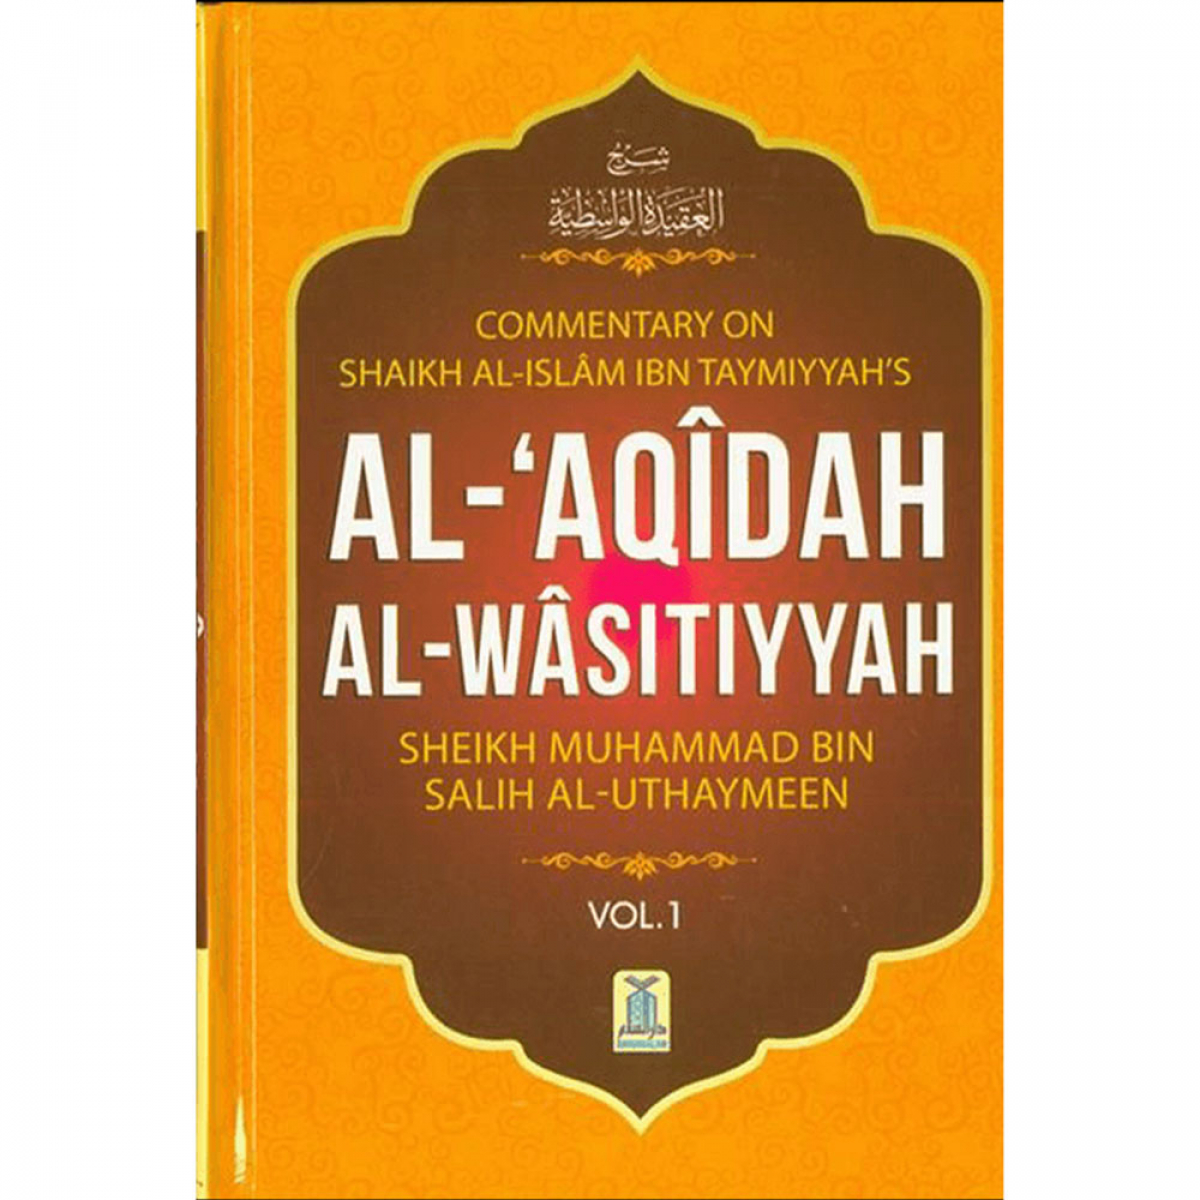 Al-'Aqidah Al-Wasitiyyah (2 Volume Set) by Al-Uthaimeen